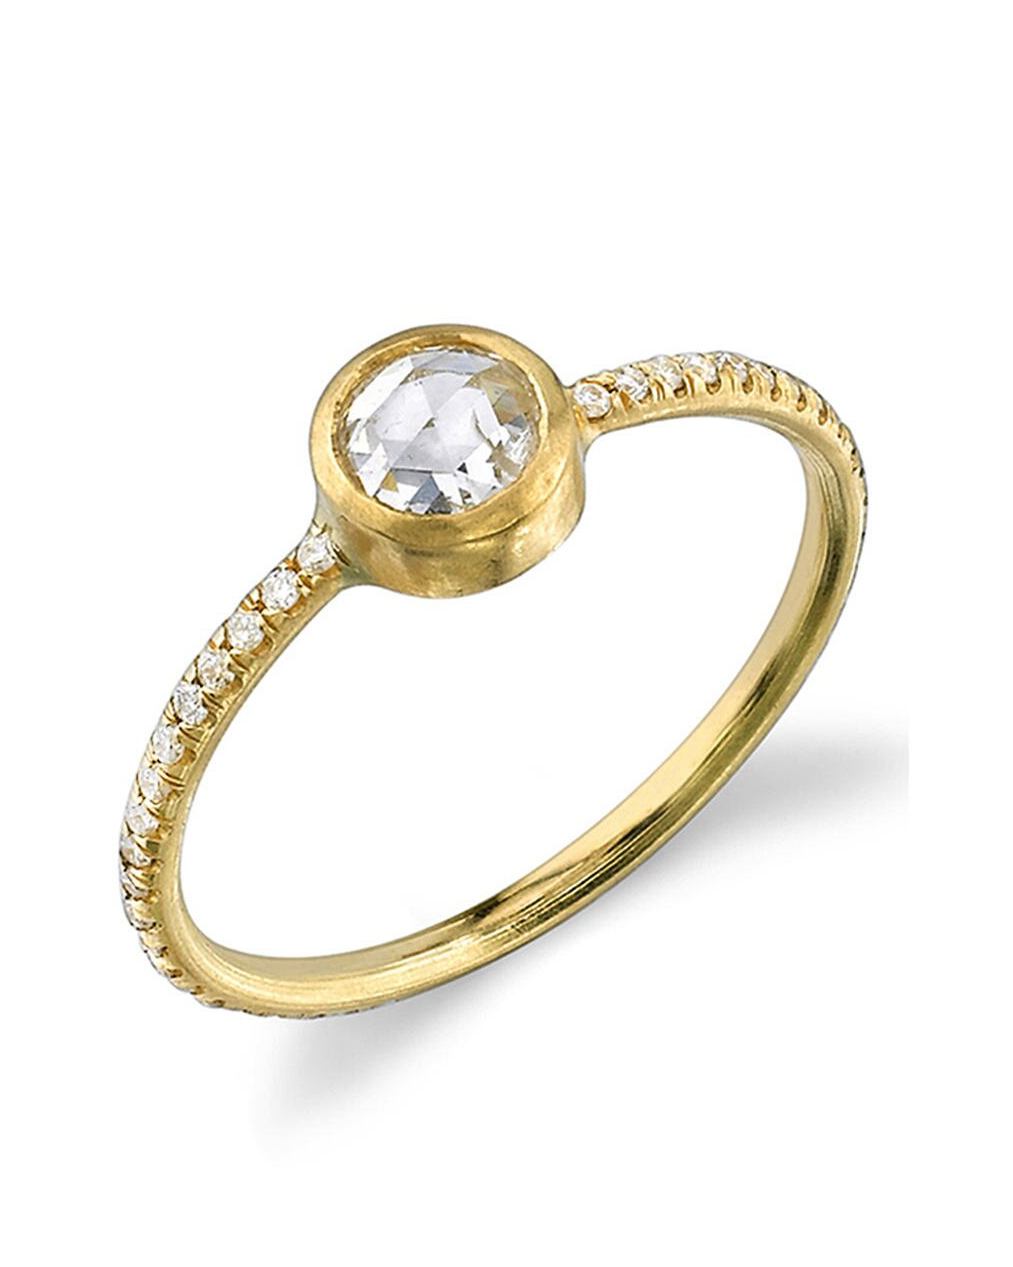 Irene Neuwirth rose cut diamond stacking ring,